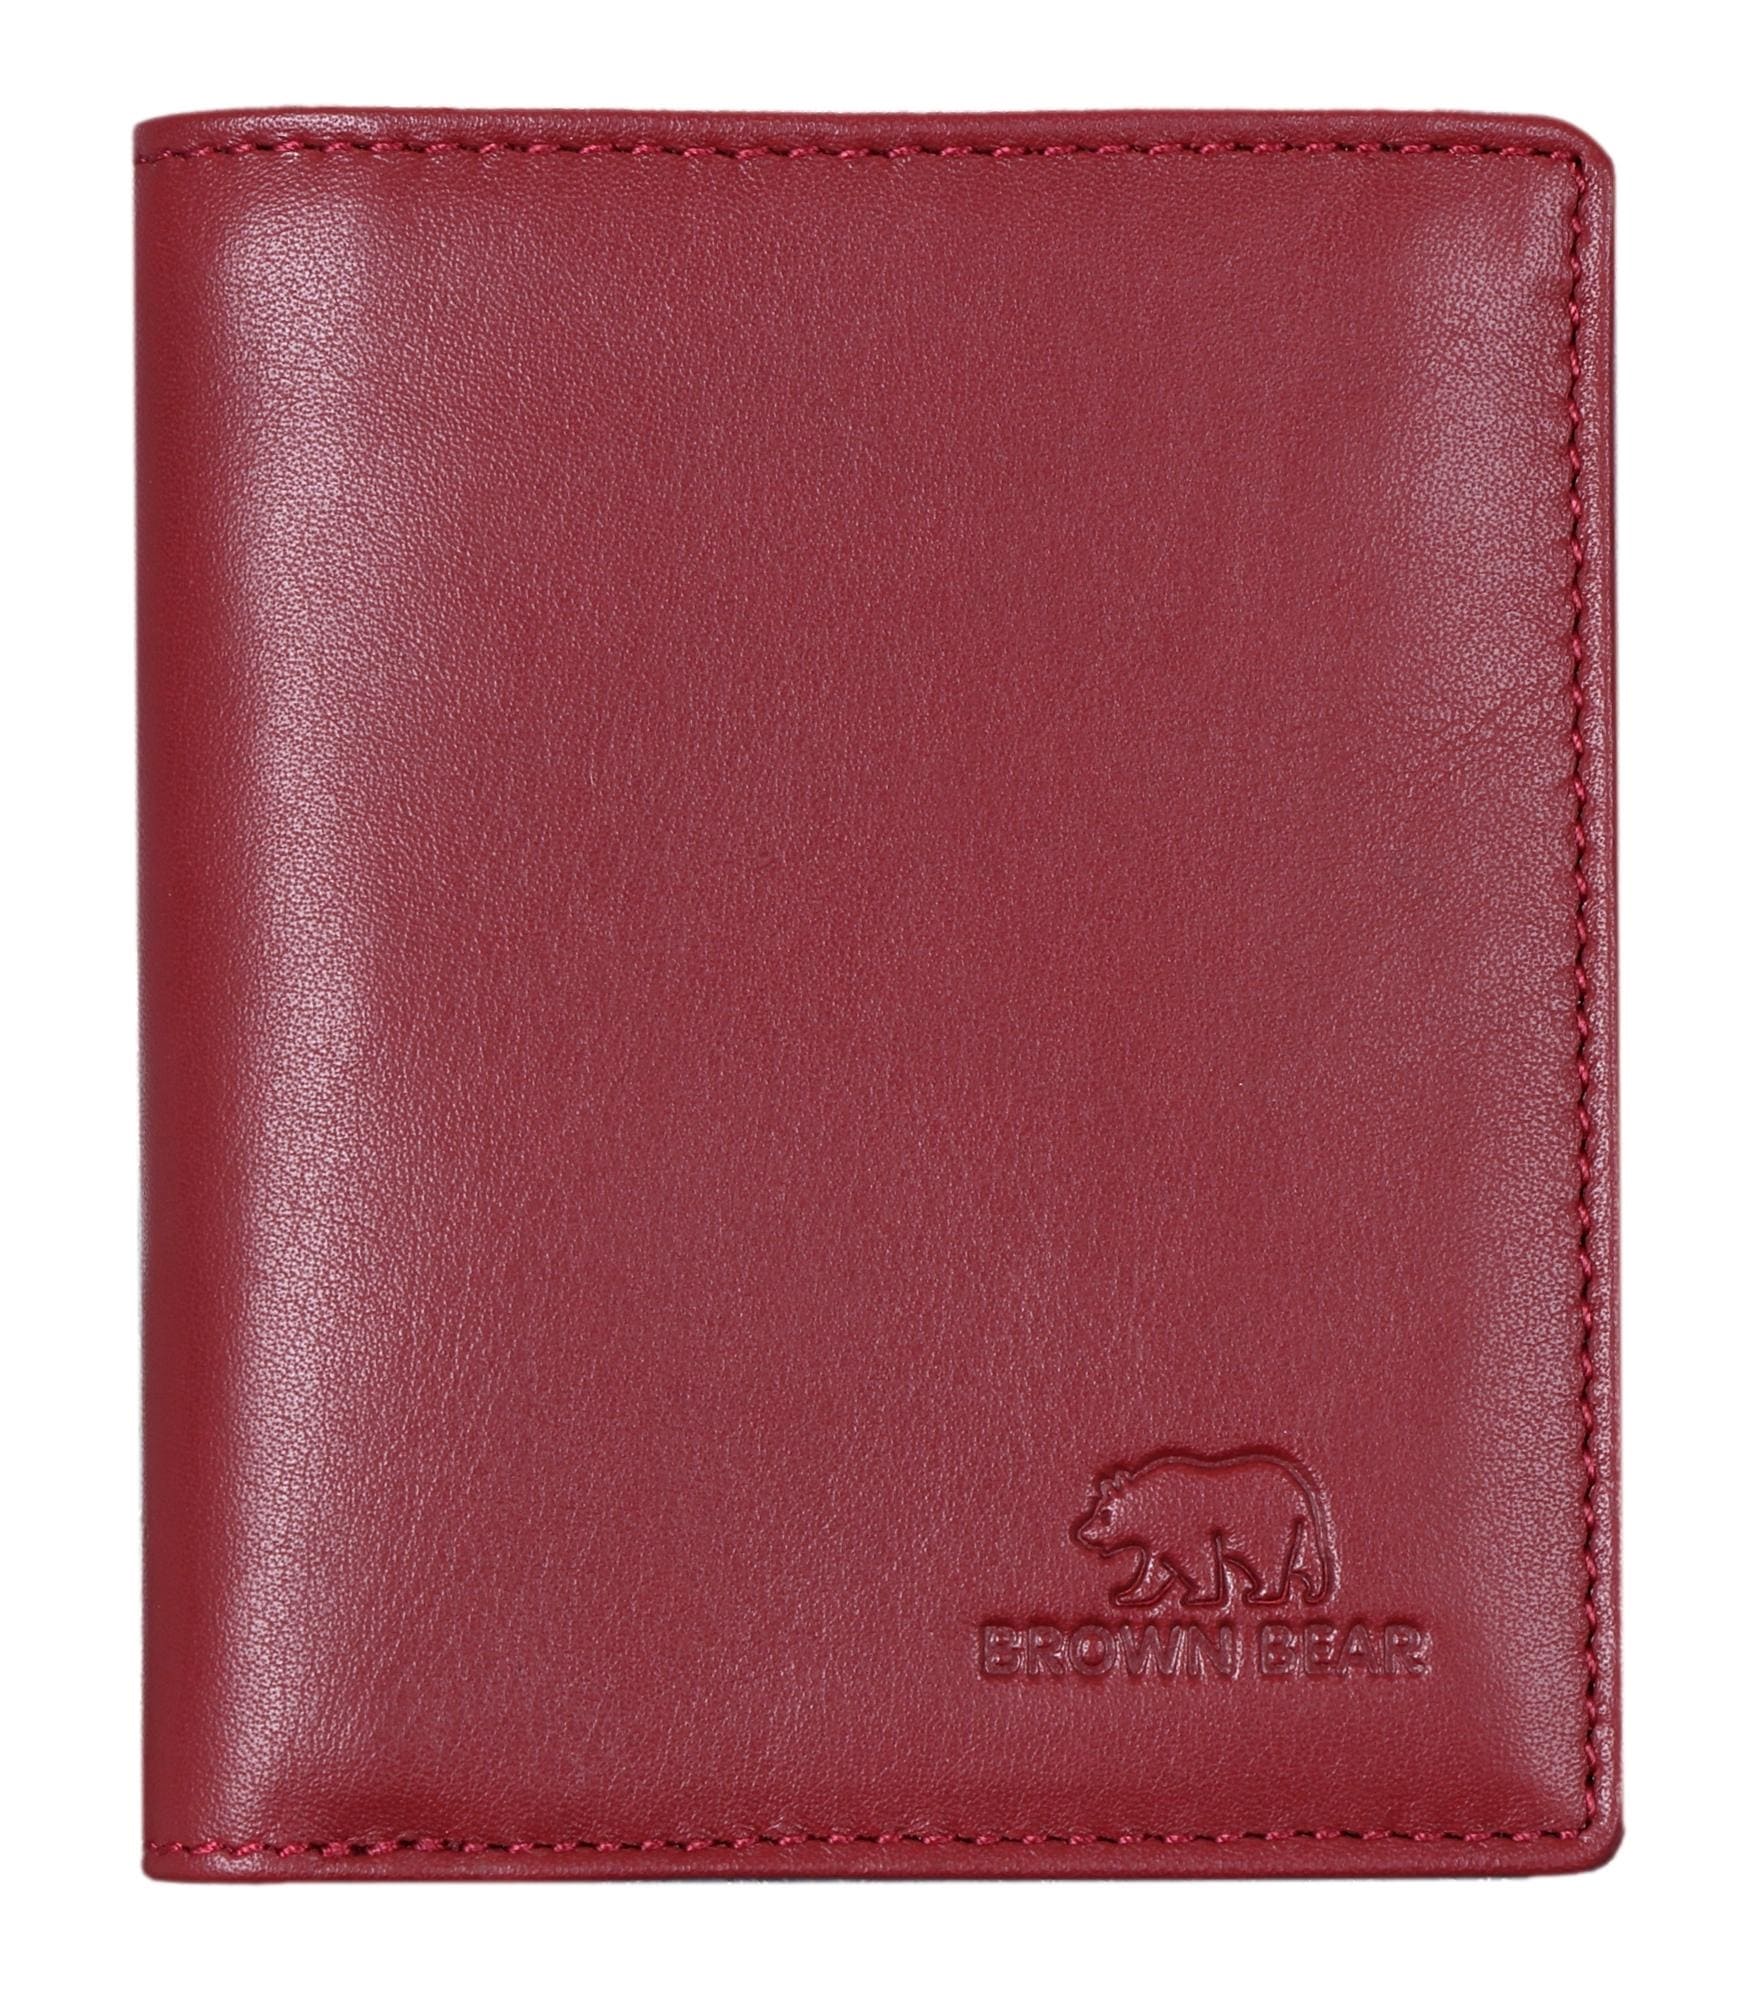 Brown Bear Slim Wallet - 8005 Rot